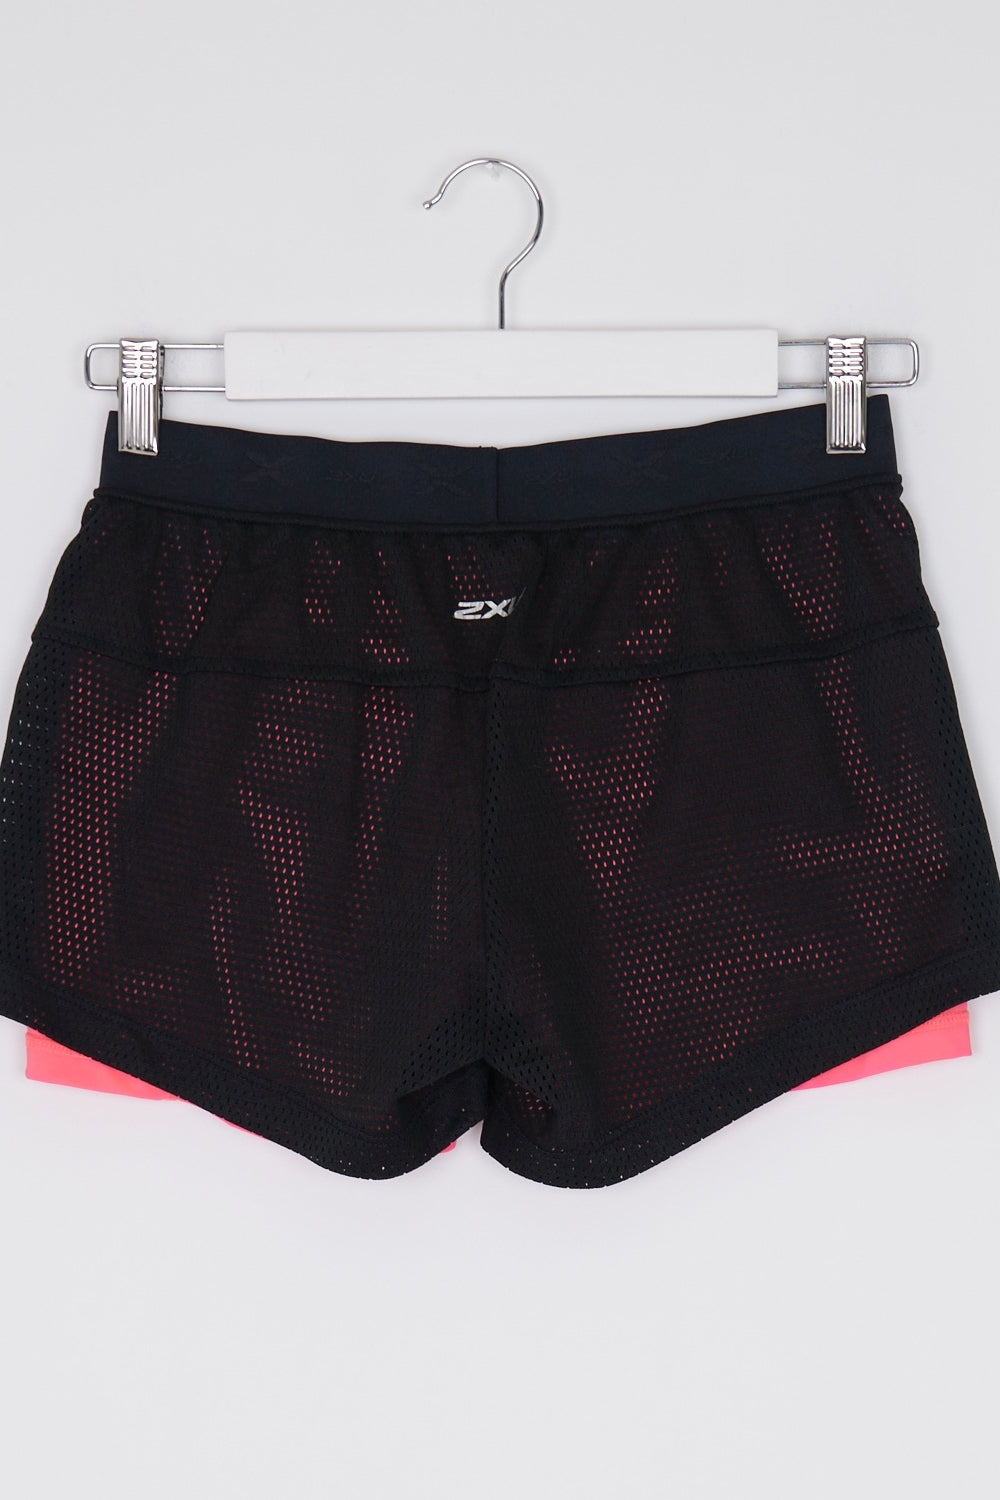 2XU Black And Pink Active Shorts S